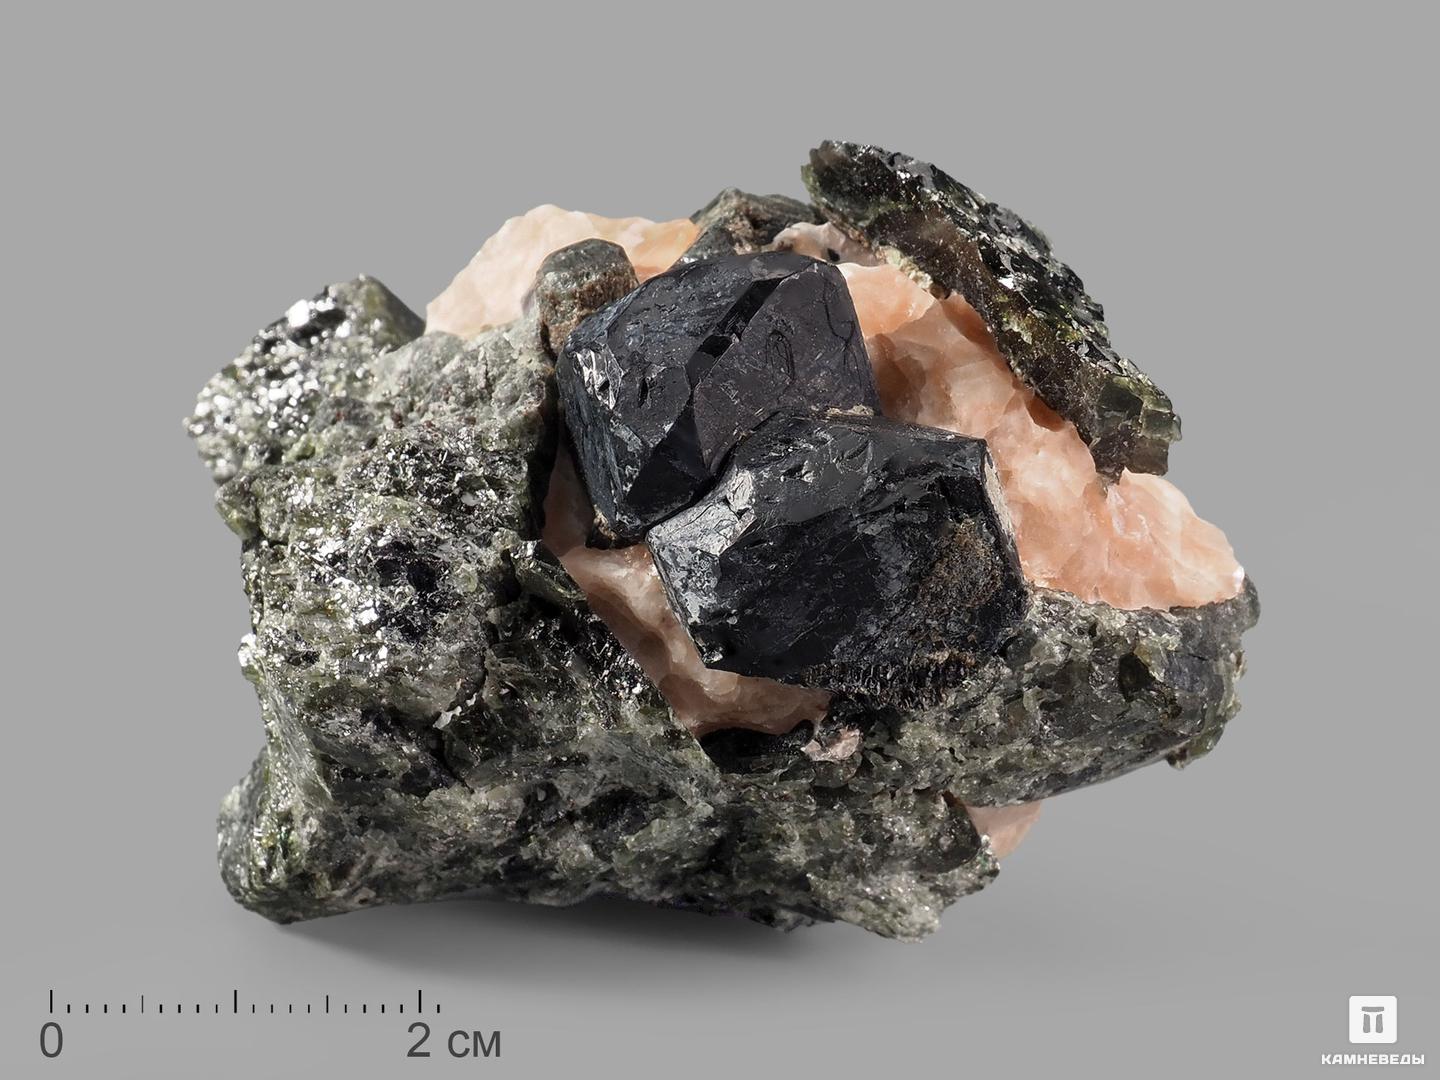 Шпинель чёрная кристаллы с кальцитом и диопсидом, 5,5х3,6х3 см, 21059, фото 1